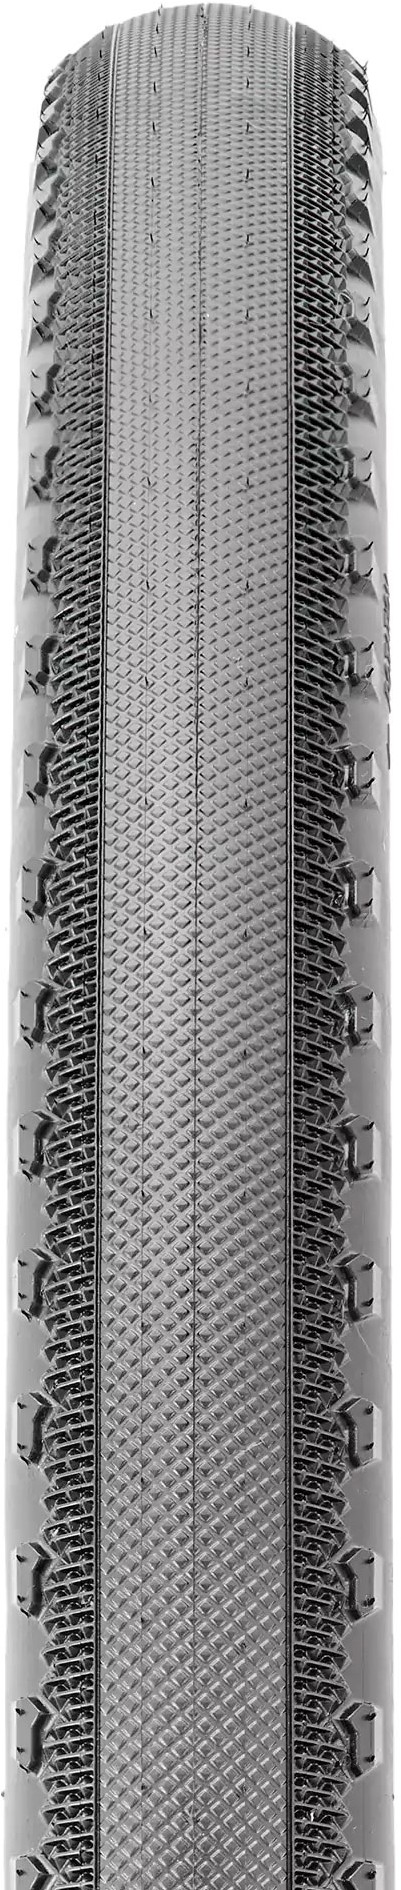 Receptor Folding 60TPI EXO TR 700c Gravel Tyre image 1